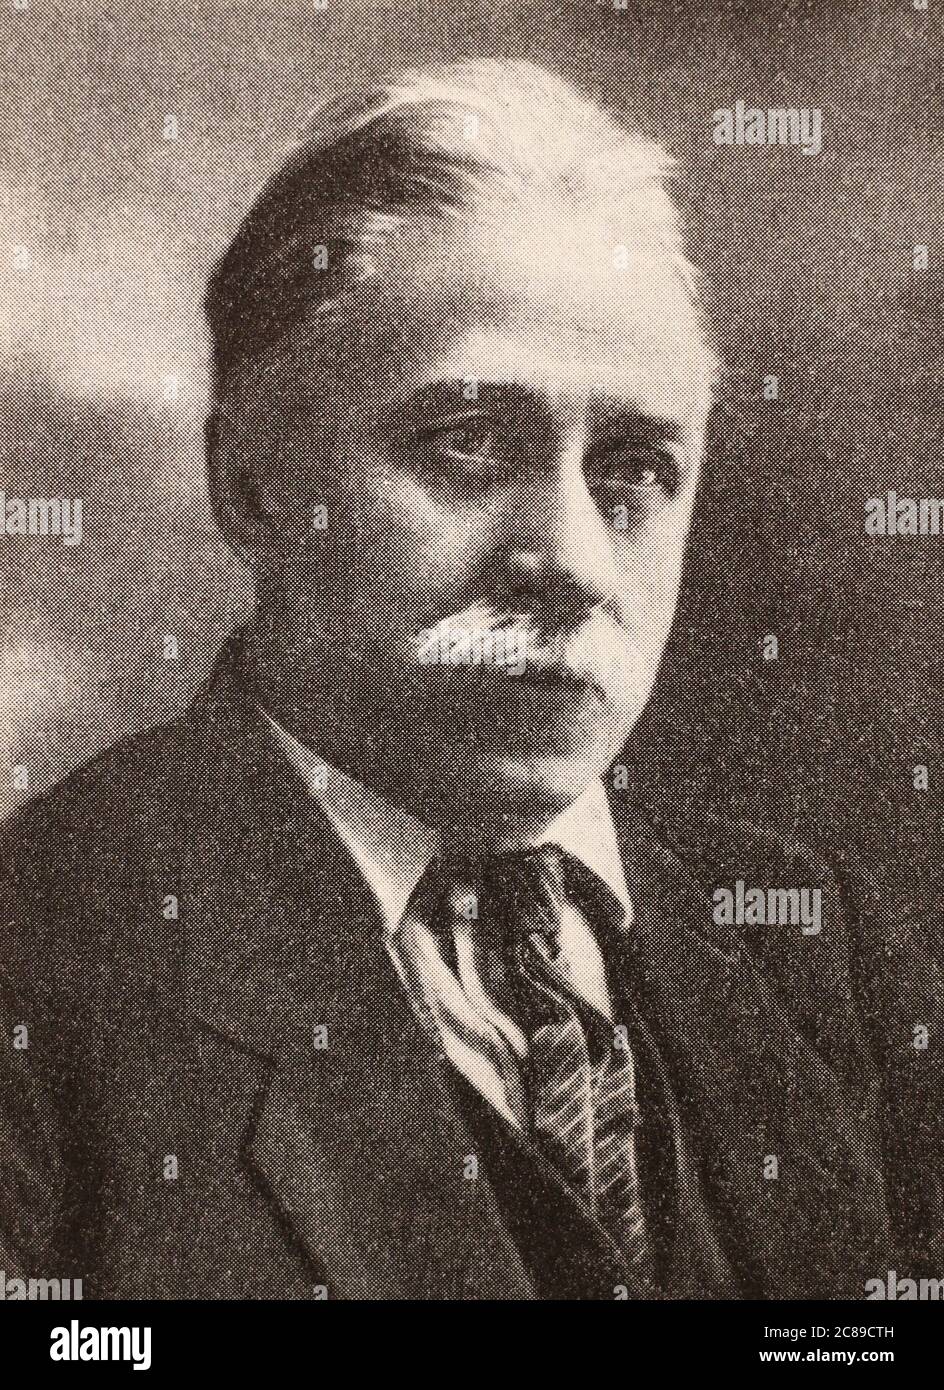 Pyotr Ivanovich Stuchka era un giurista e politico comunista lettone che servì come leader del governo bolscevico nella Repubblica di Lettonia durante la guerra d'indipendenza lettone. Foto Stock